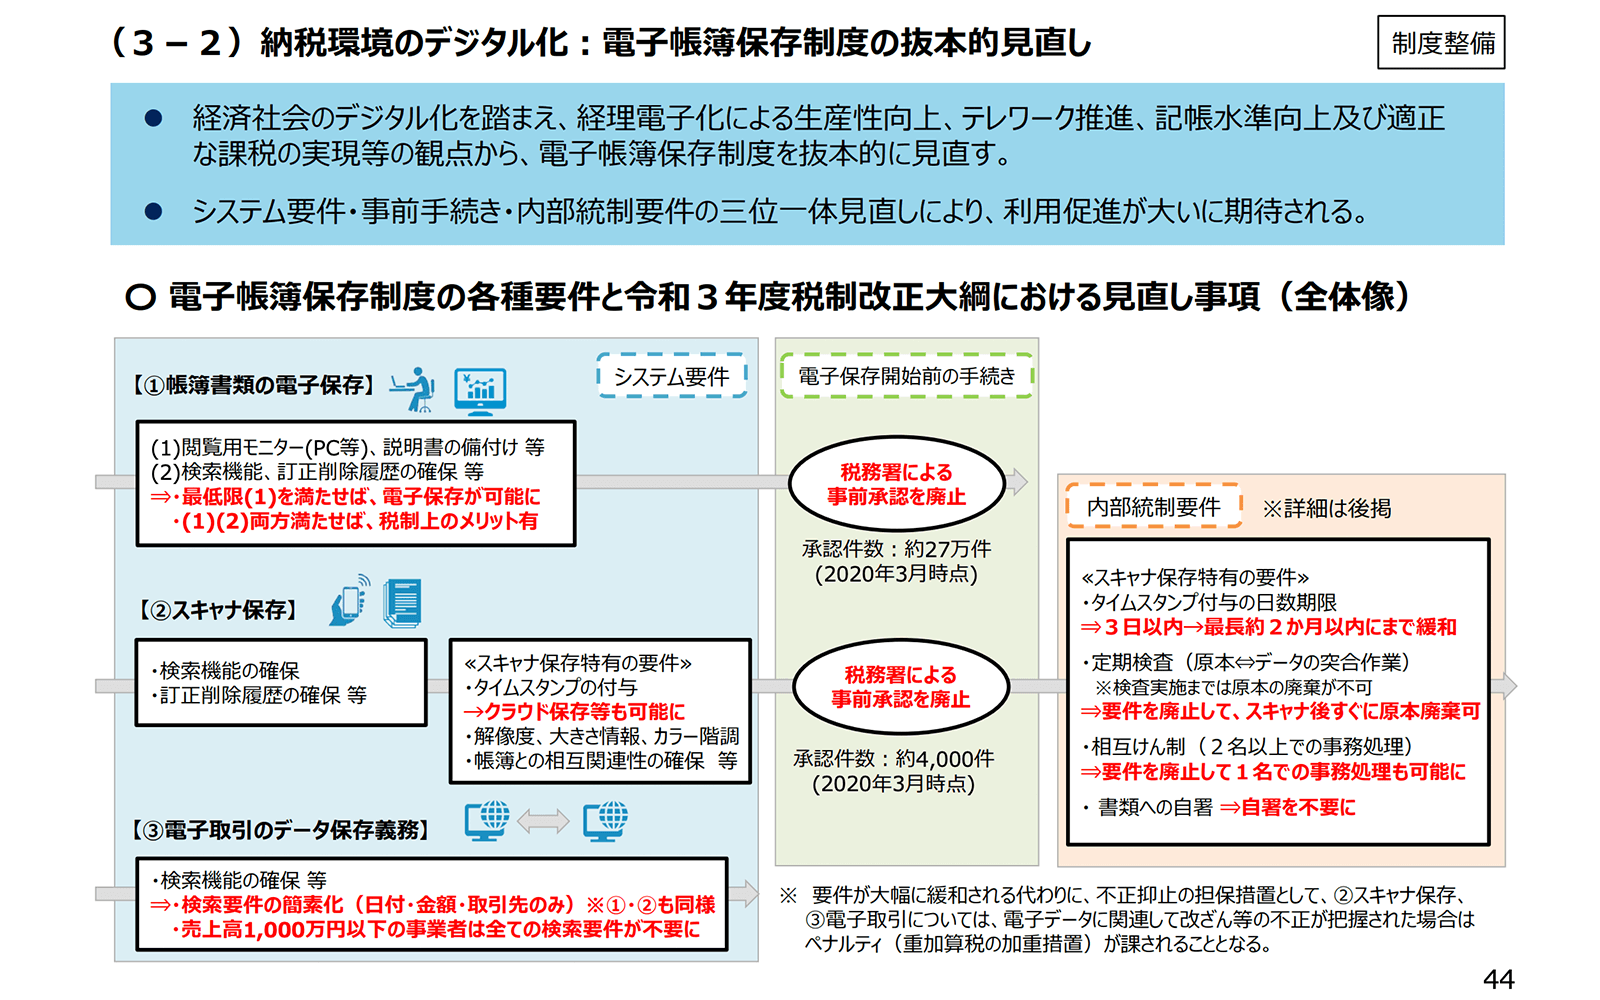 https://www.meti.go.jp/main/zeisei/zeisei_fy2021/zeisei_k/pdf/zeiseikaisei.pdf 2021年1月21日最終アクセス